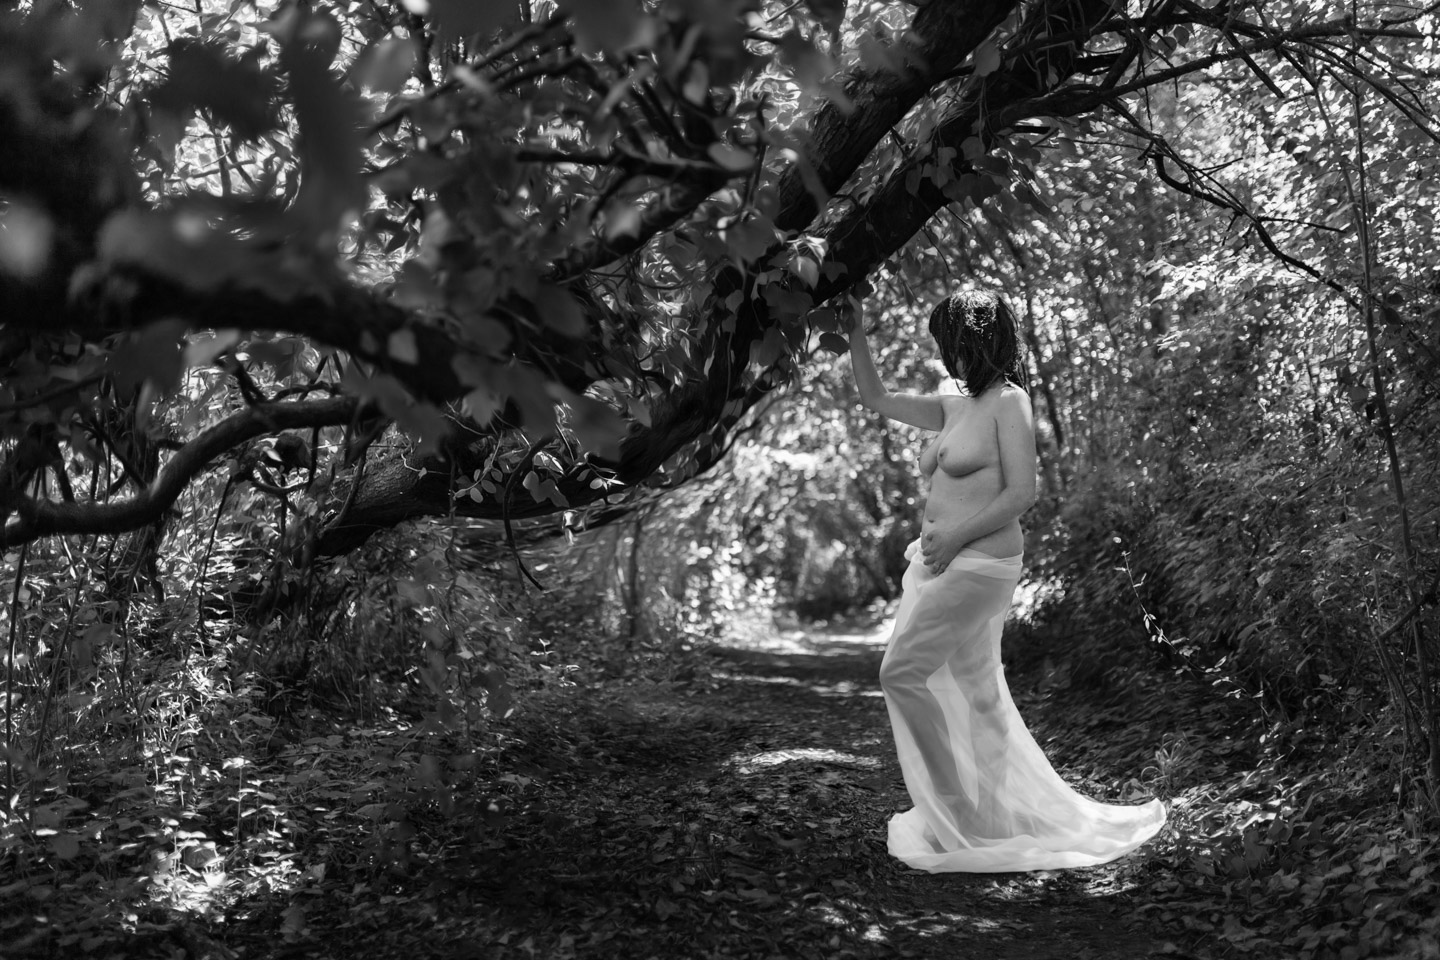 Portrait noir et blanc d'une femme nue en forêt